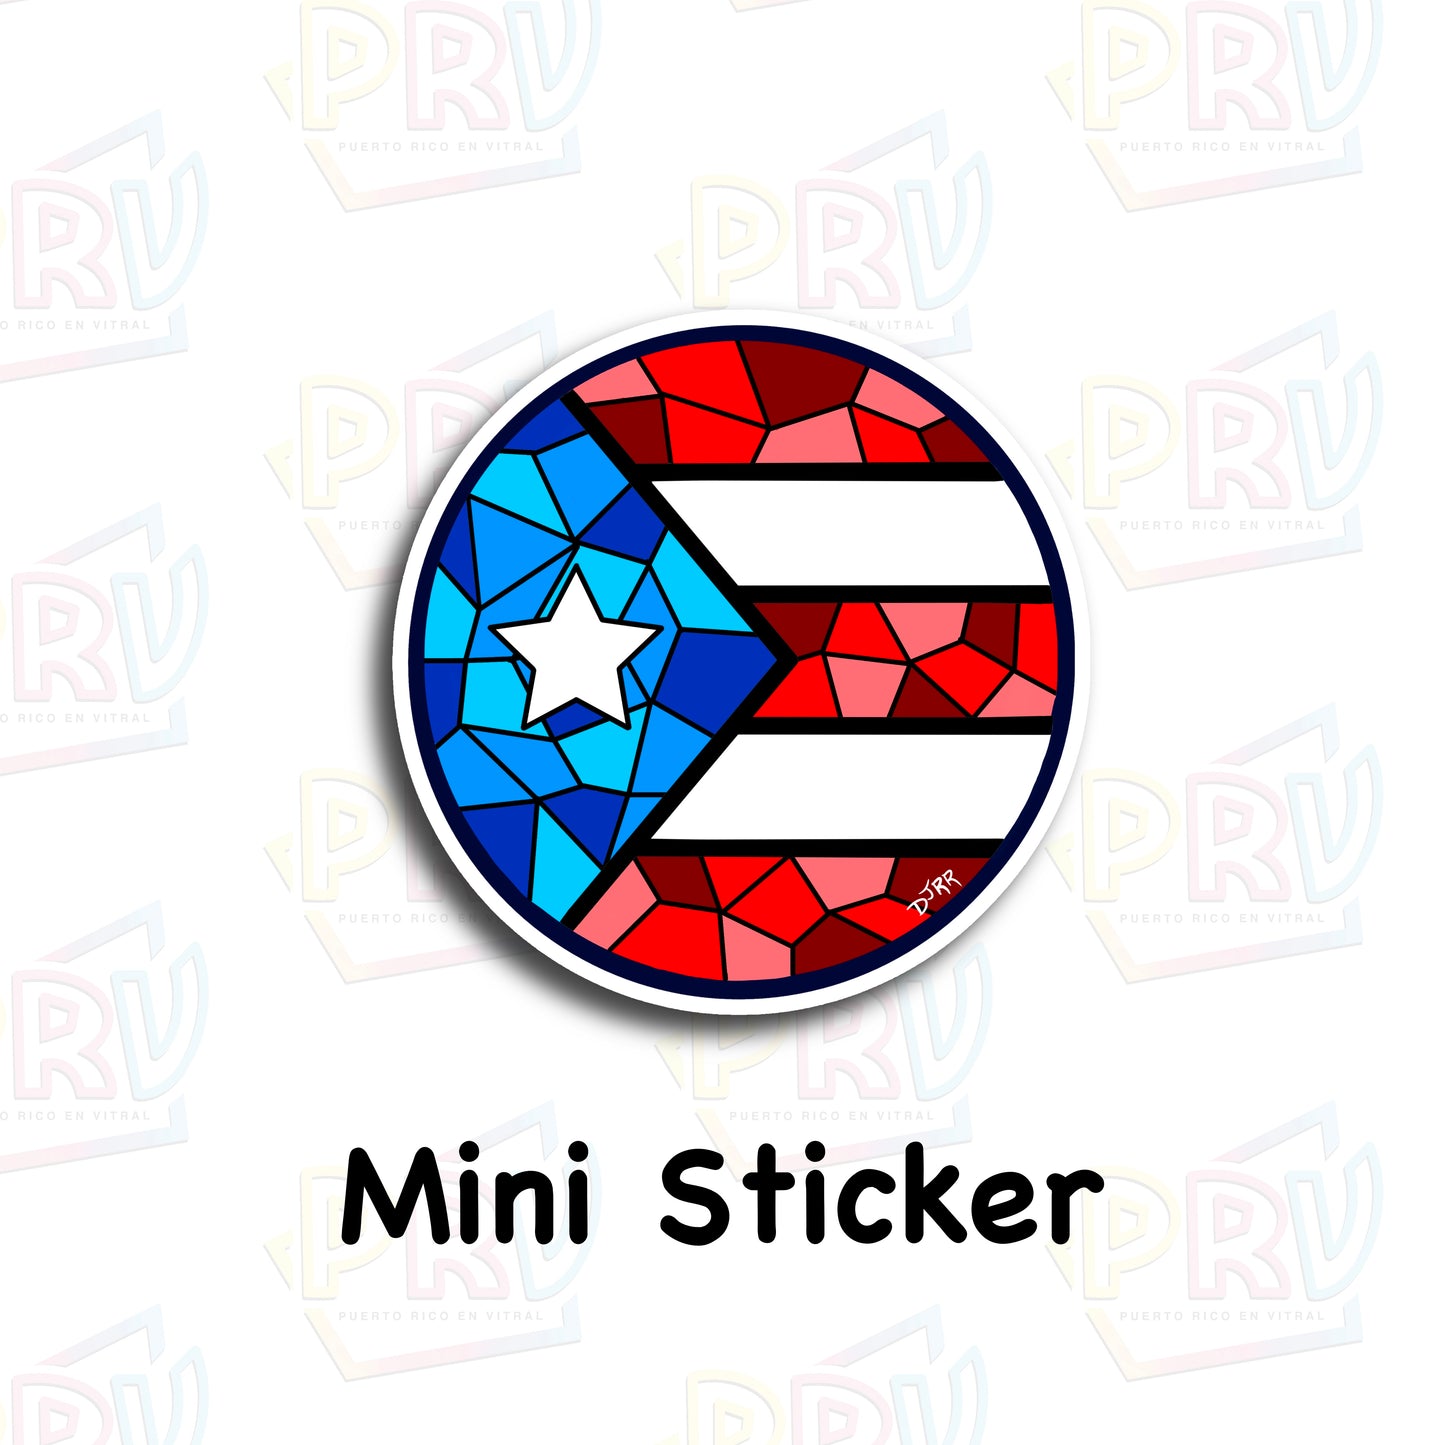 Tradición Puertorriqueña (Mini Sticker)